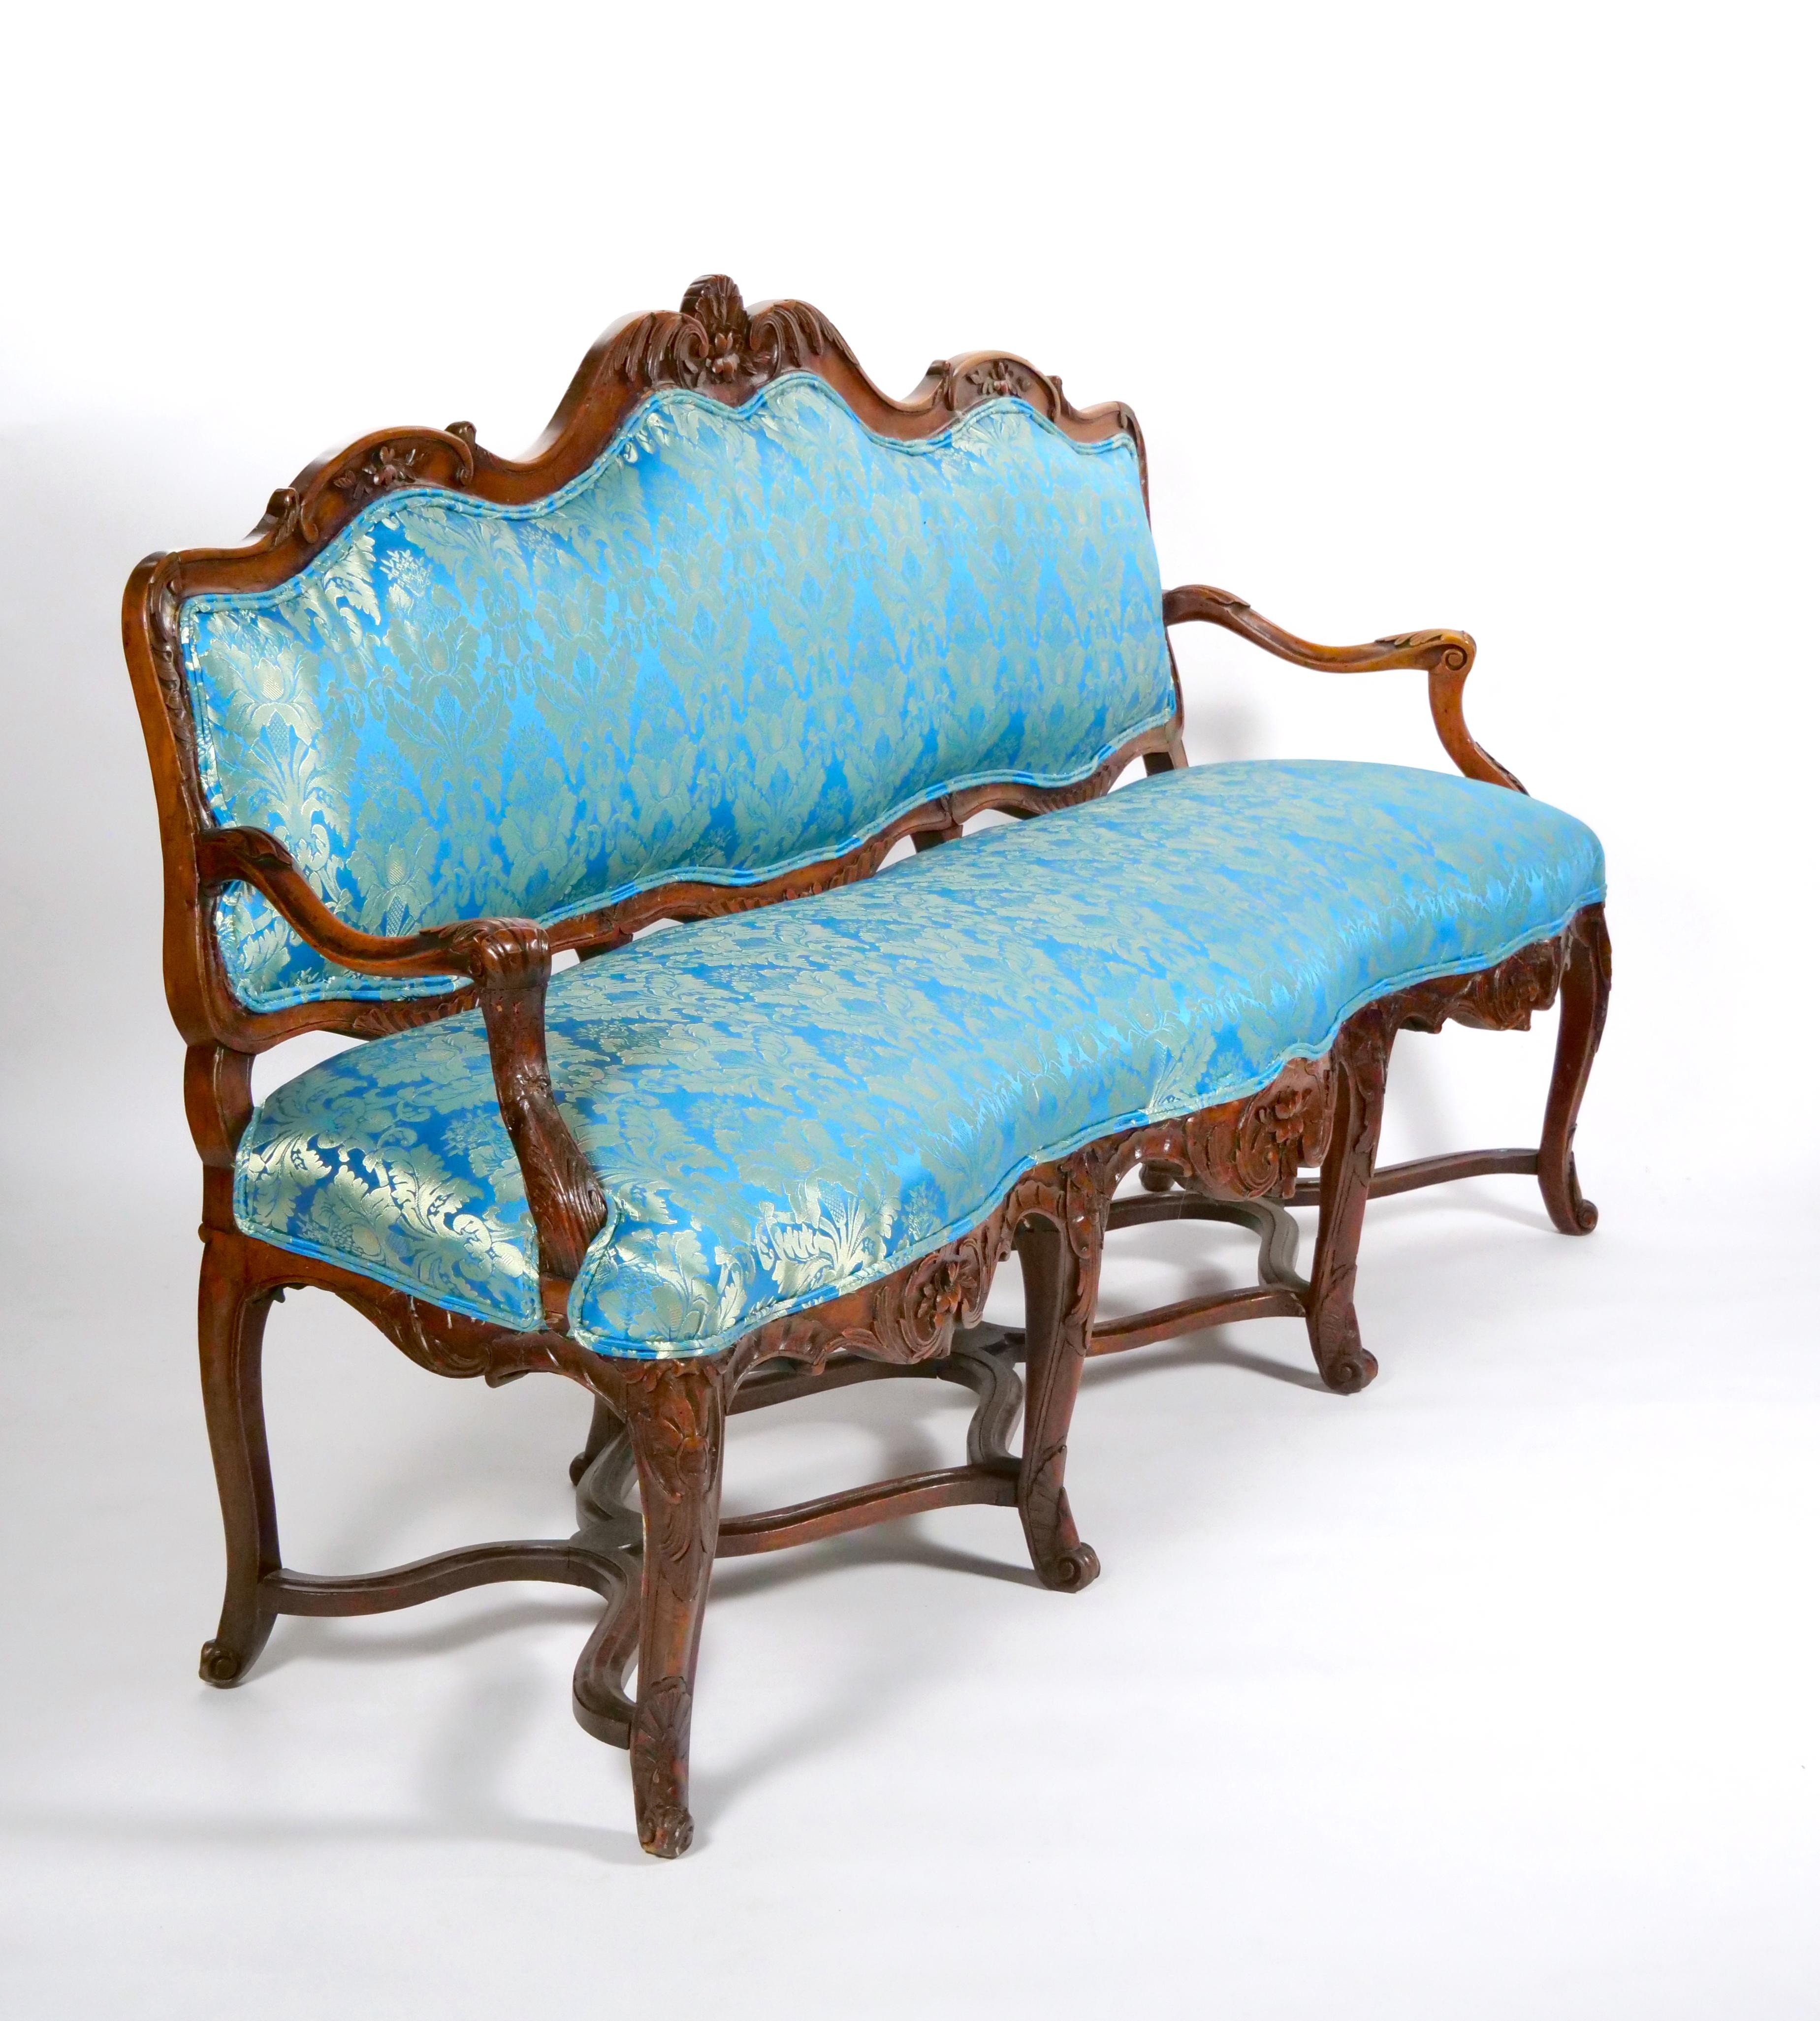 Erhöhen Sie den Charme und die Raffinesse Ihres Wohnraums mit diesem schönen antiken 19. Jahrhundert Französisch Louis XV Stil Drei-Sitz-Sofa, ein Meisterwerk des klassischen Designs und Handwerkskunst. Das aus massivem Nussbaumholz gefertigte Sofa